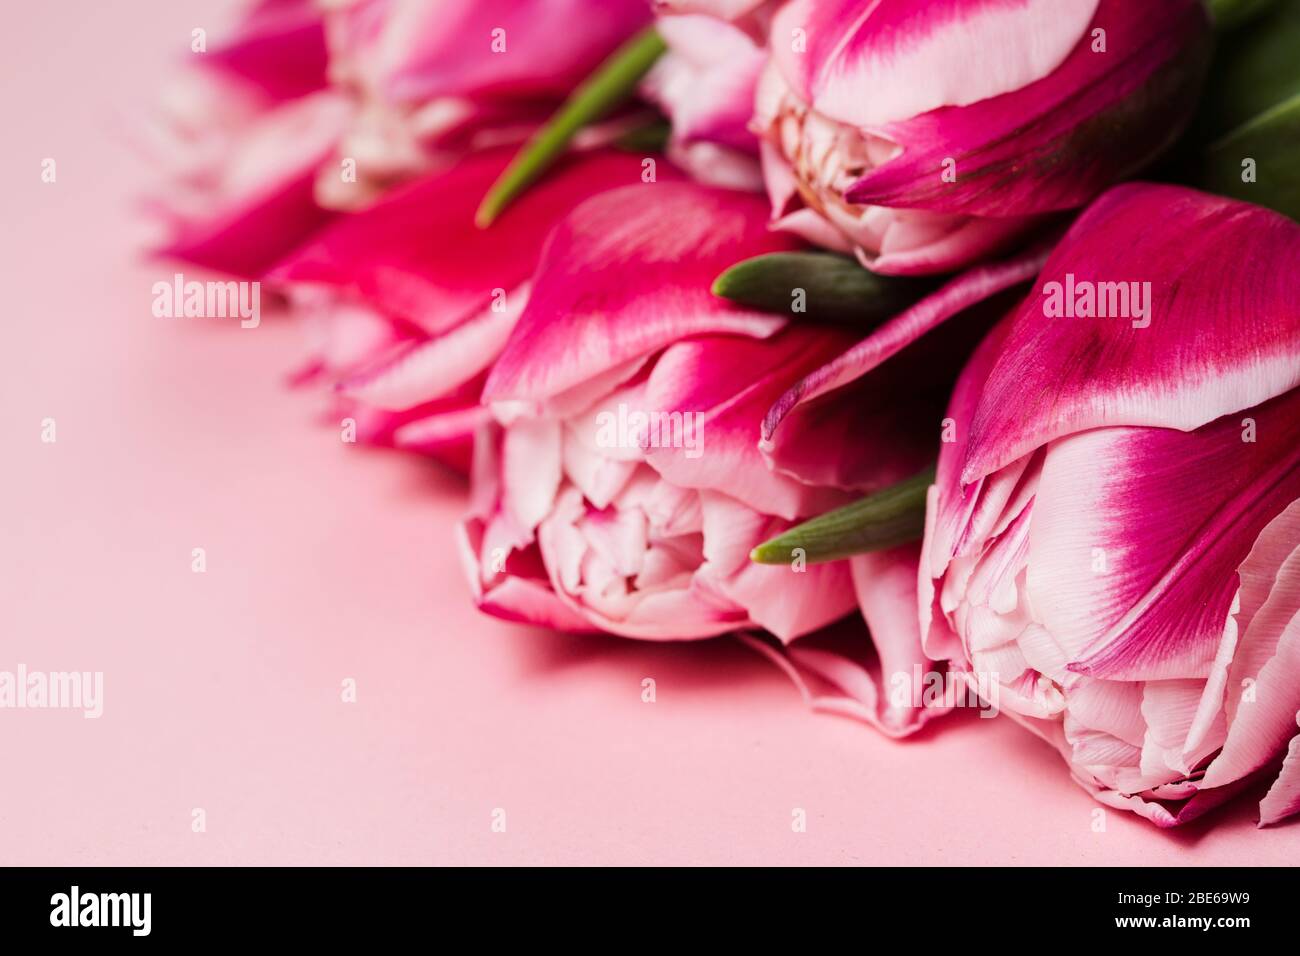 Bouquet de fleurs de tulipes roses sur table de pinkish. Bonne Saint Valentin fond rose monochrome. Concept de la fête des mères. Espace de copie Banque D'Images